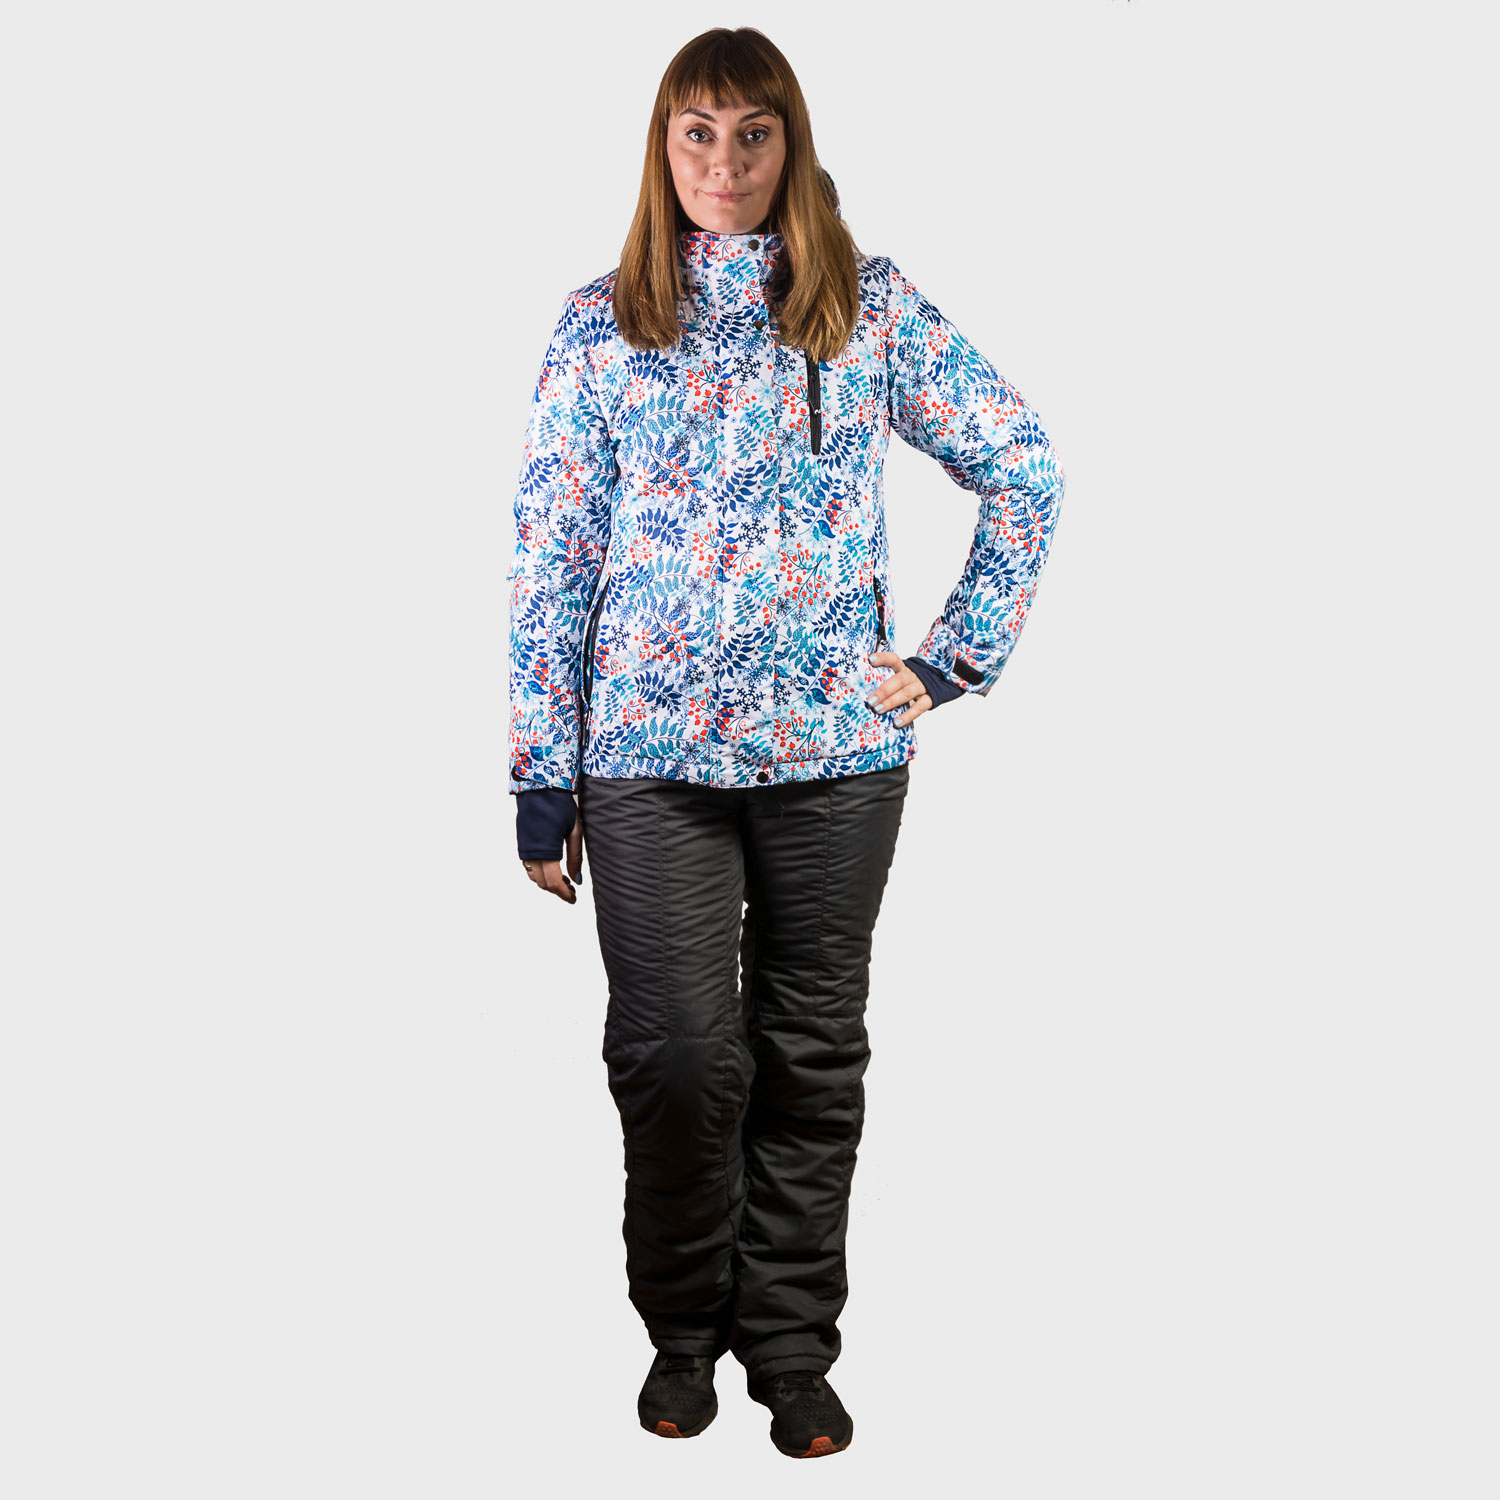 Женская яркая зимняя горнолыжная куртка, красивый женский сноубордический костюм, горнолыжная экипировка, горнолыжная одежда для прогулок